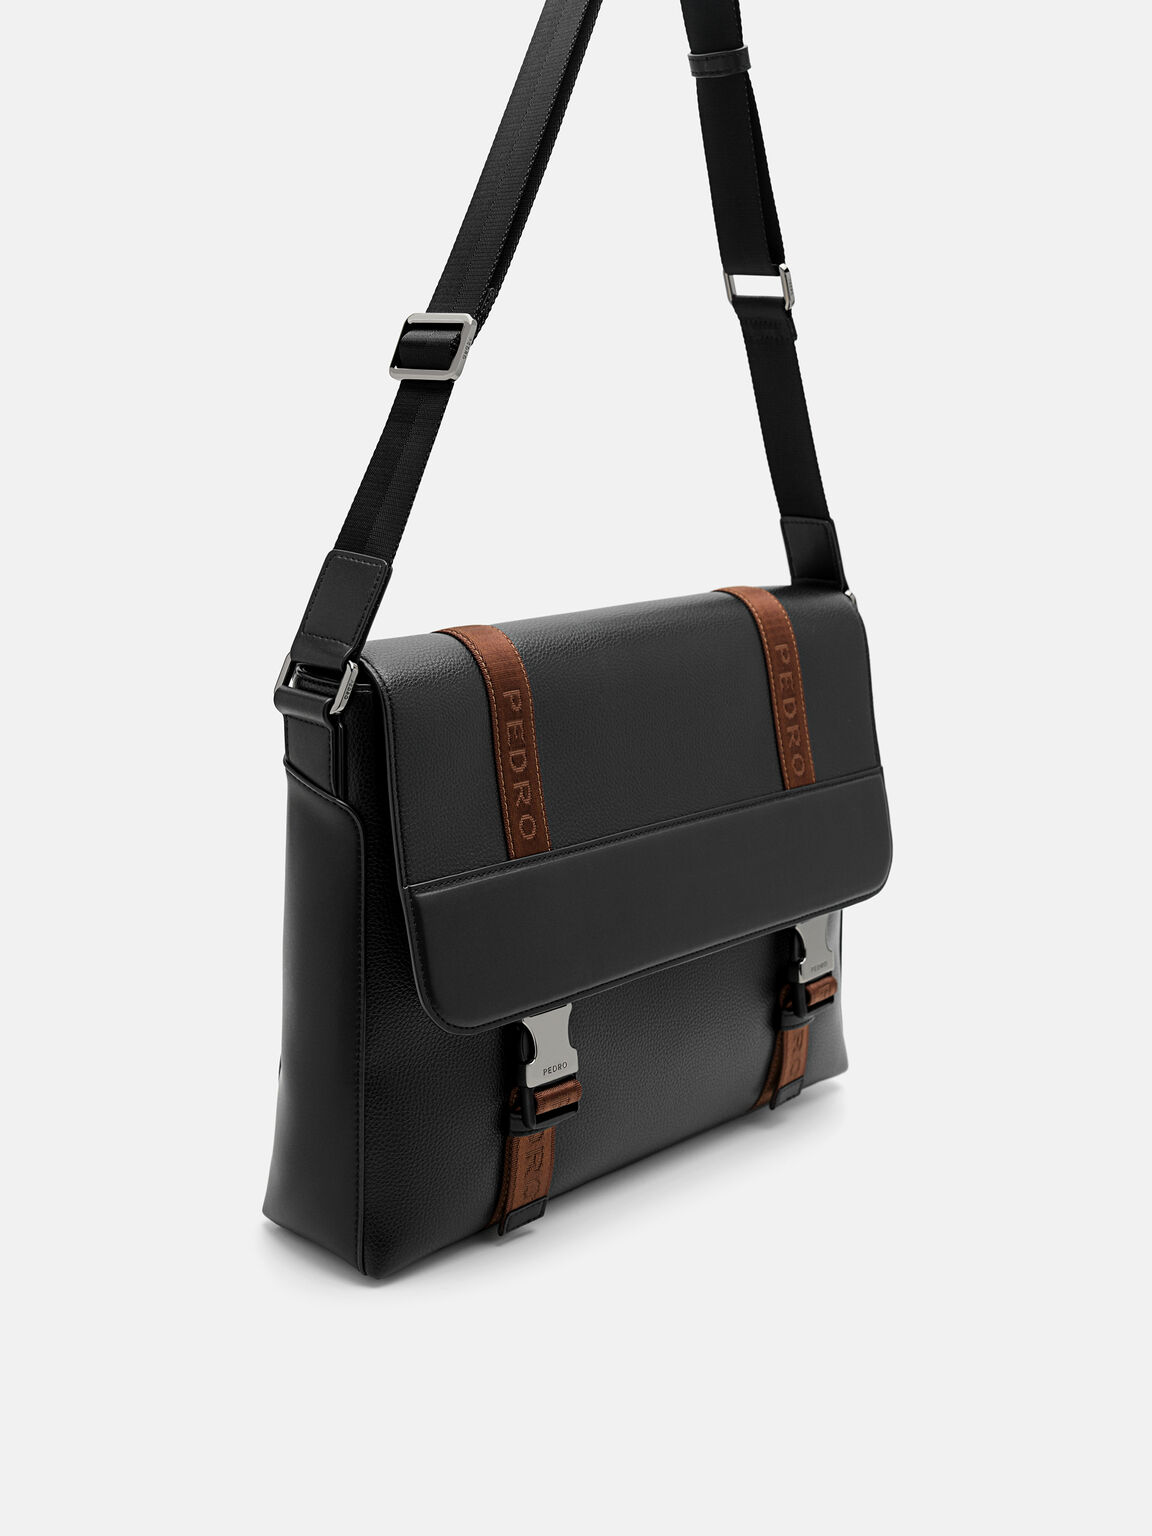 Rigby Messenger Bag, Black, hi-res